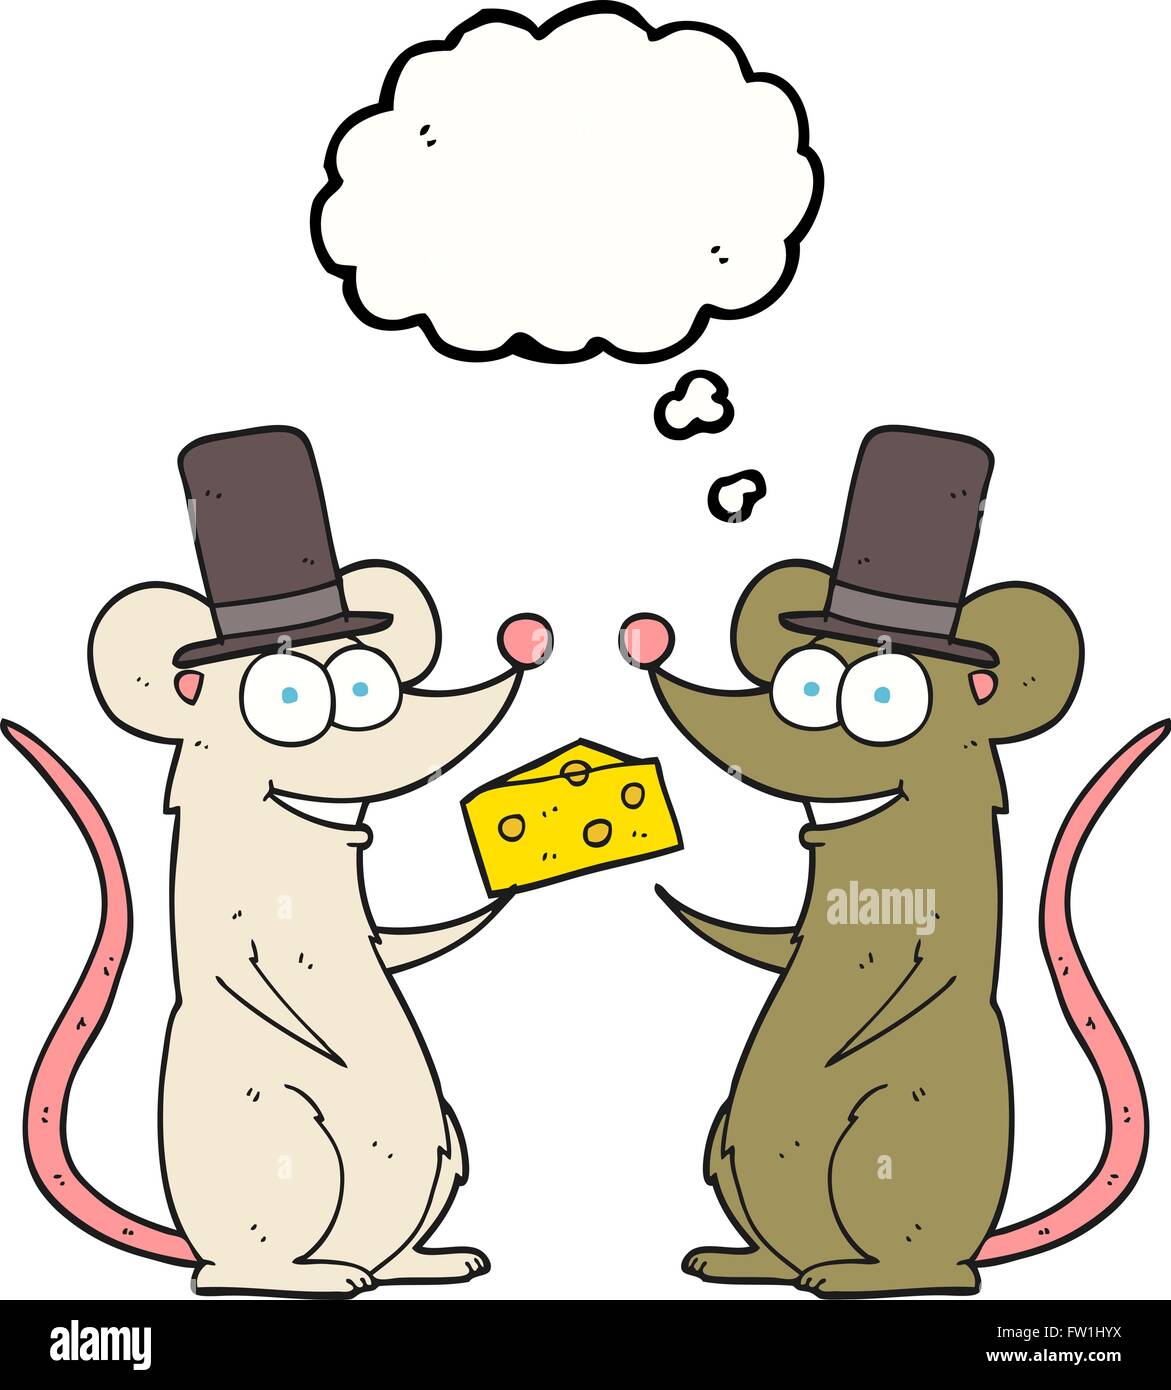 Freihändig gezeichnete Gedanken Bubble Cartoon Mäuse mit Käse Stock Vektor